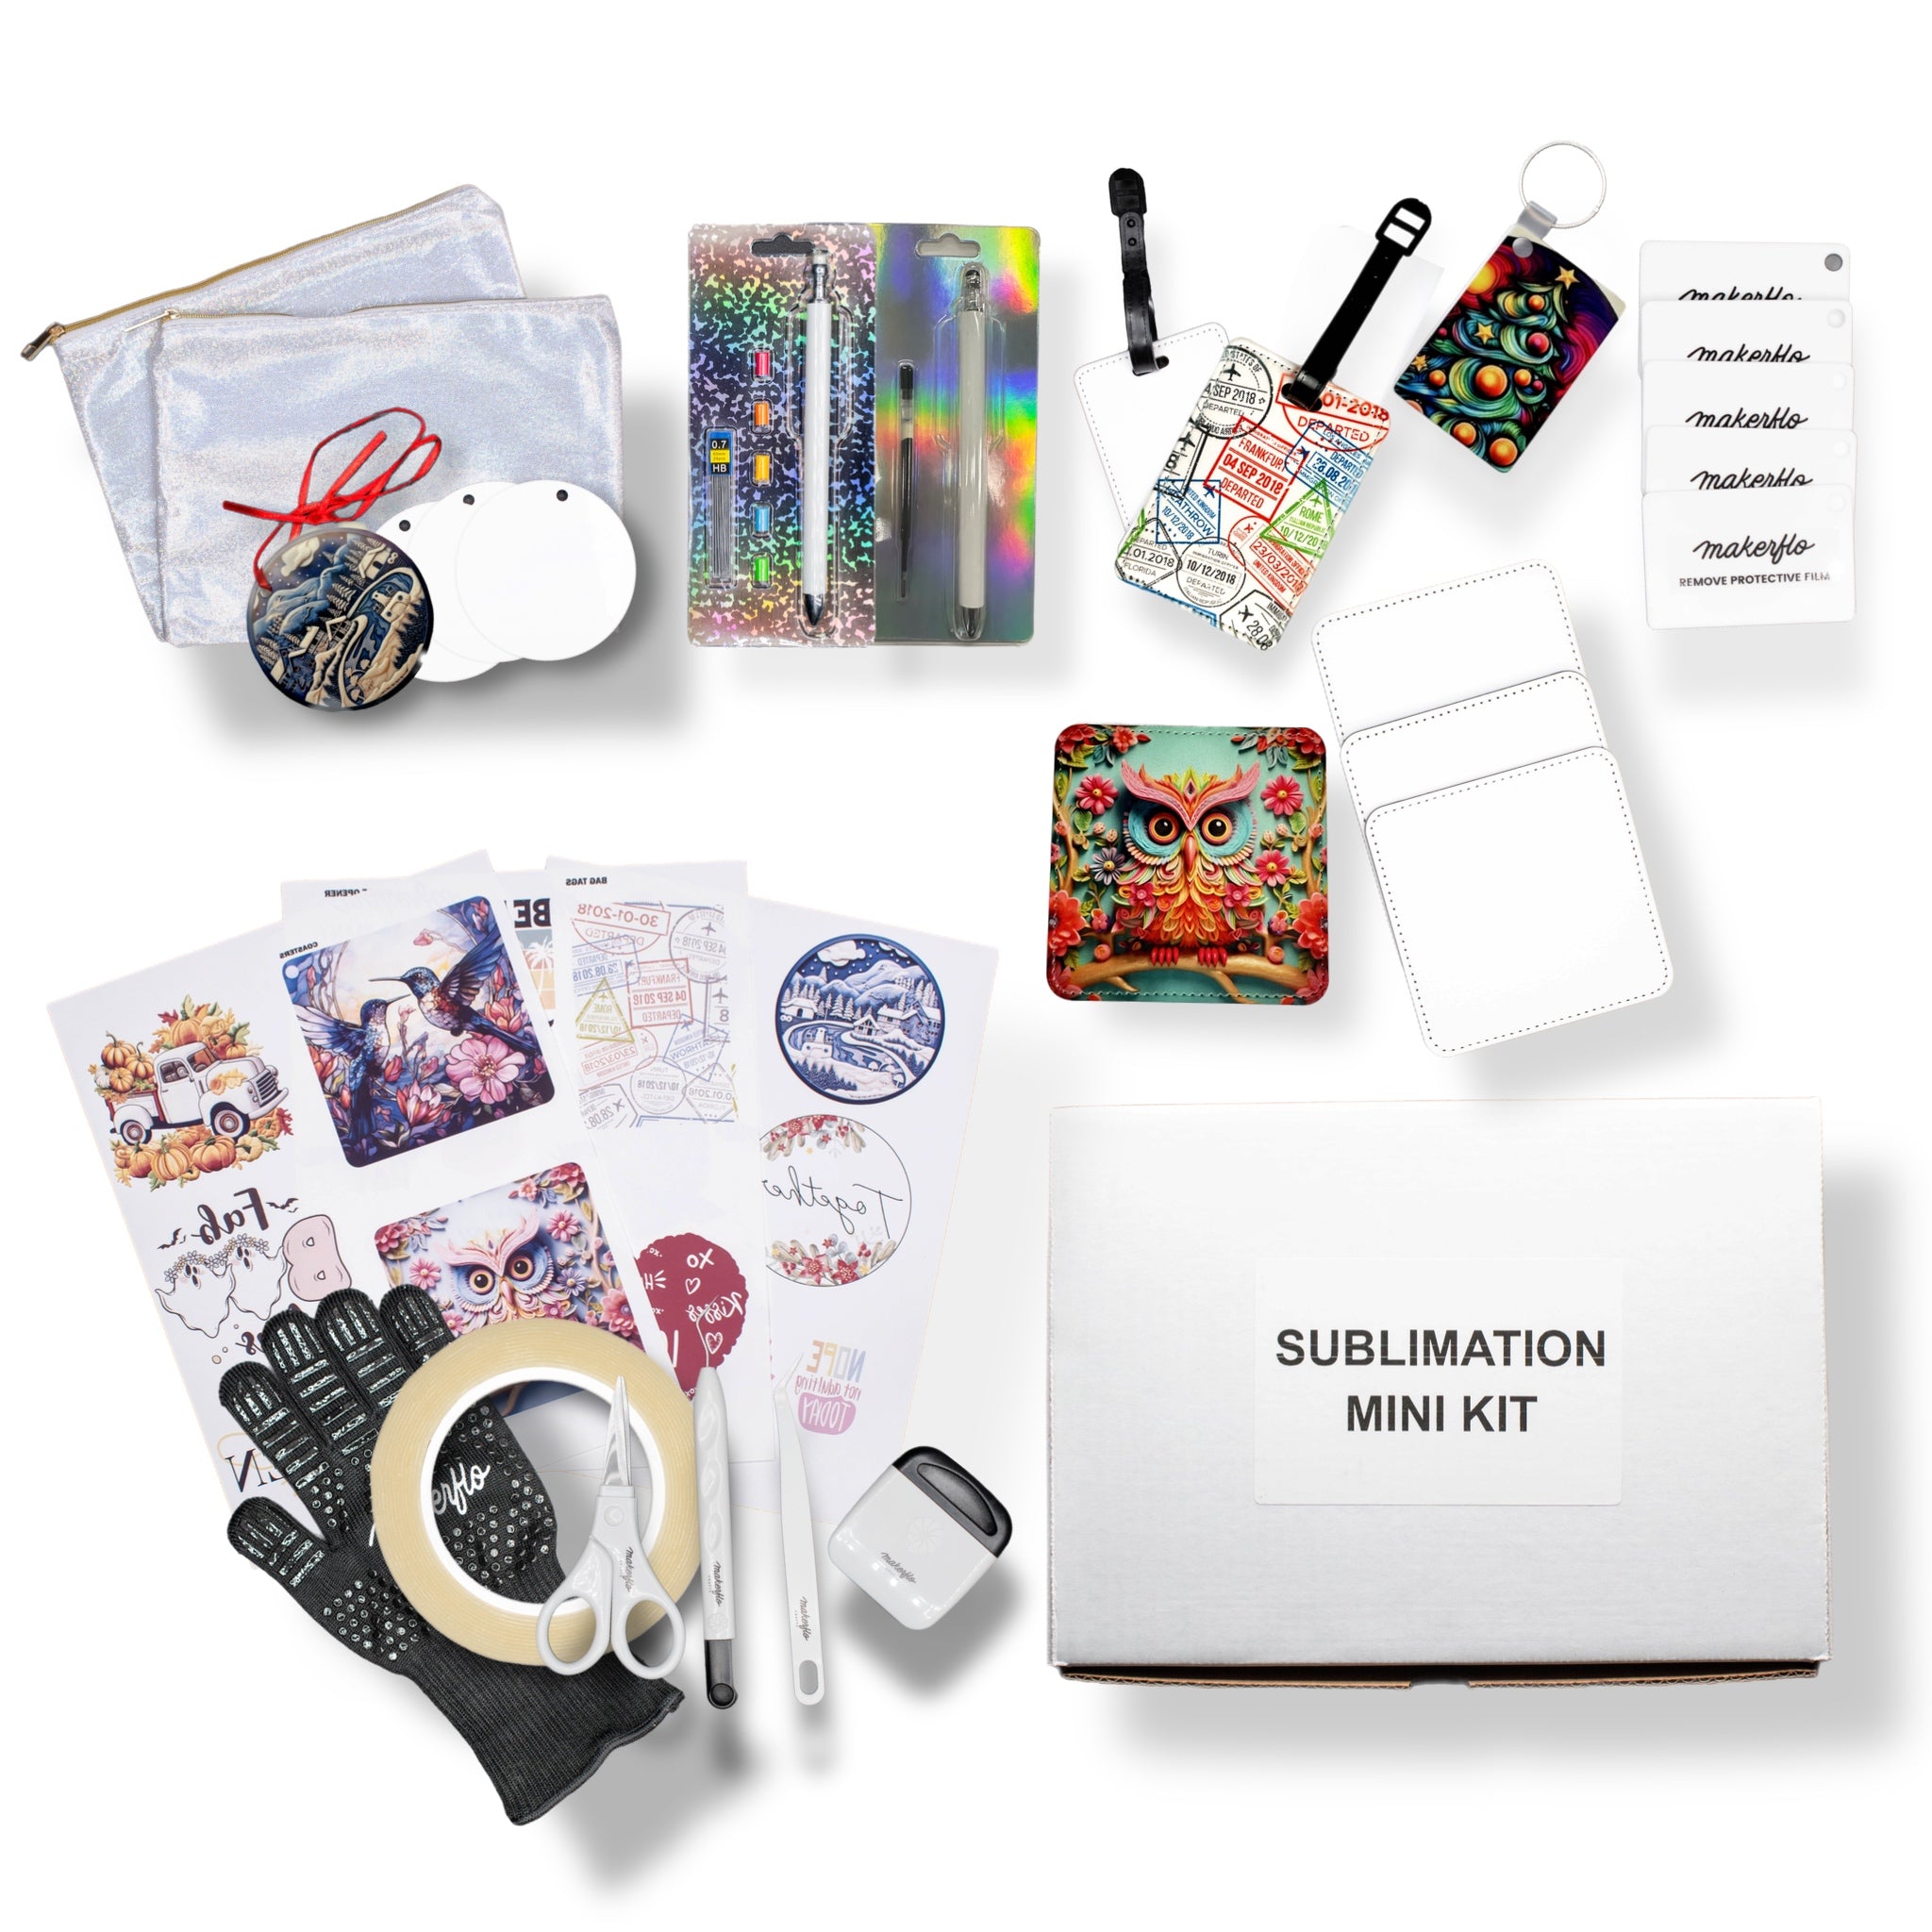 Hydro-Dip Starter Kit – MakerFlo Crafts